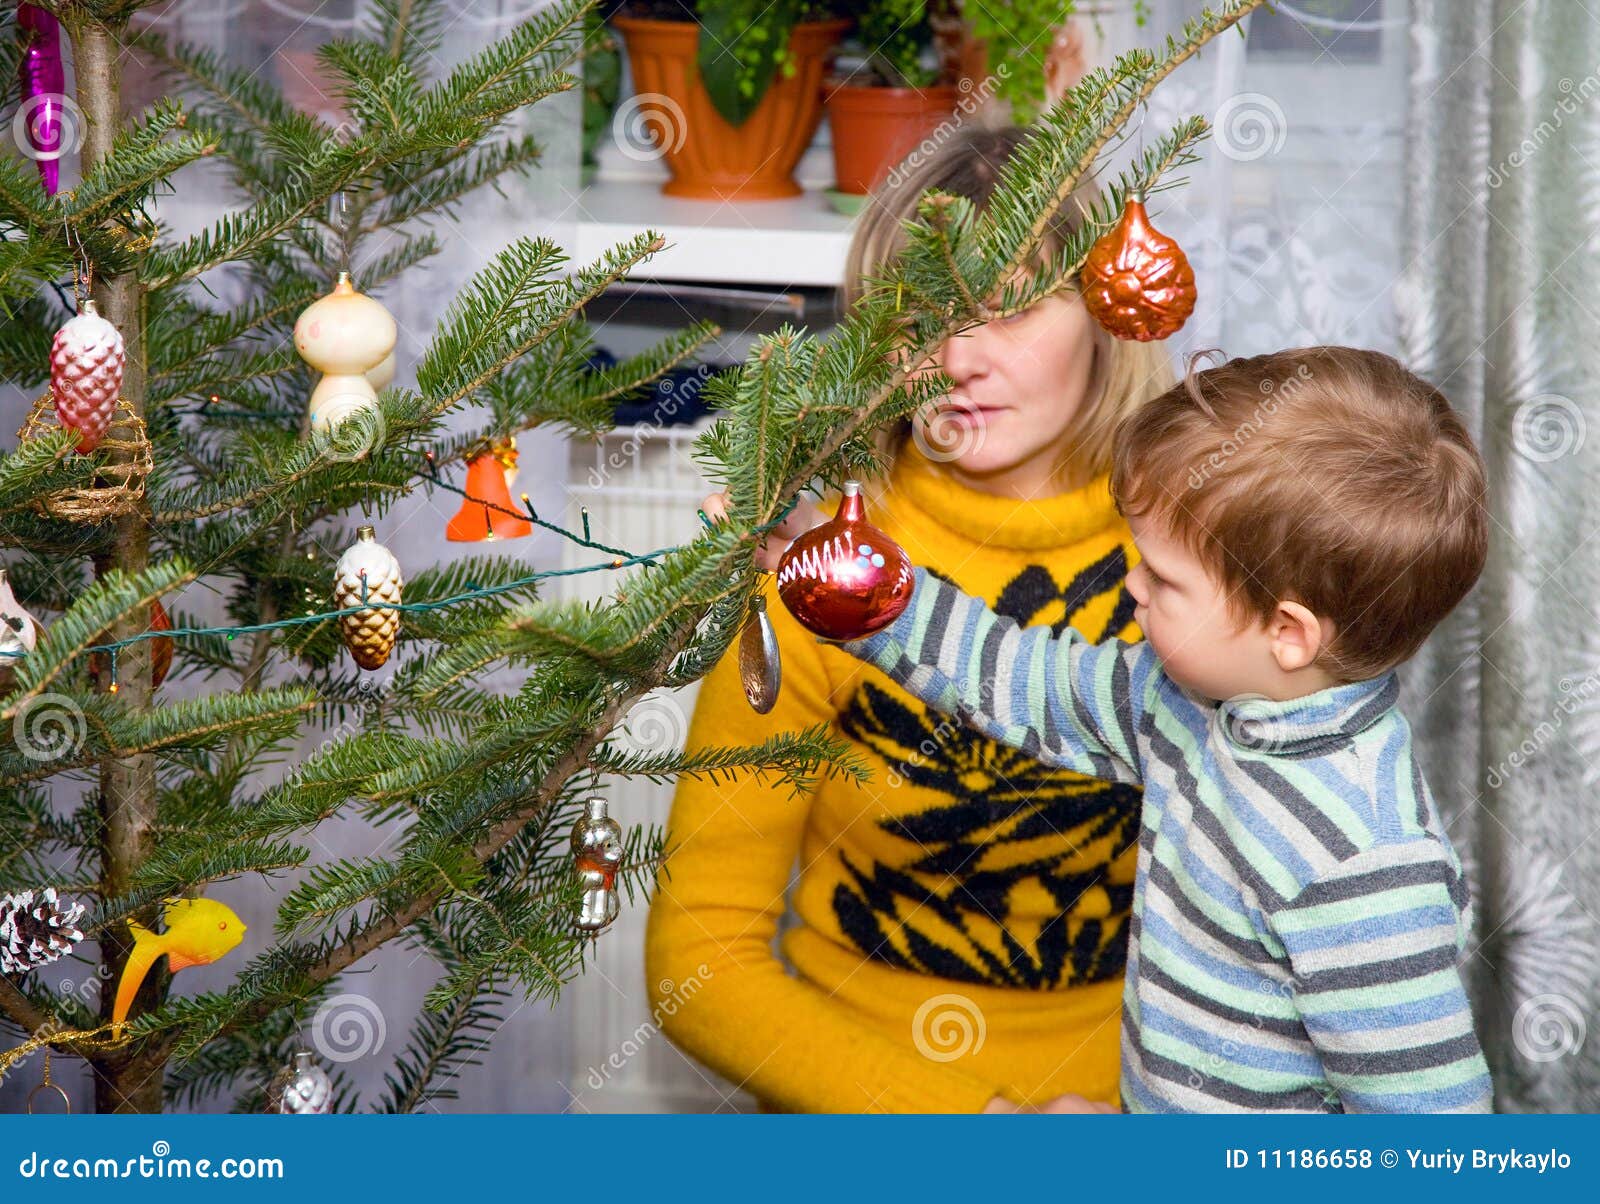 La famiglia decora l'albero di Natale per la festa del nuovo anno.